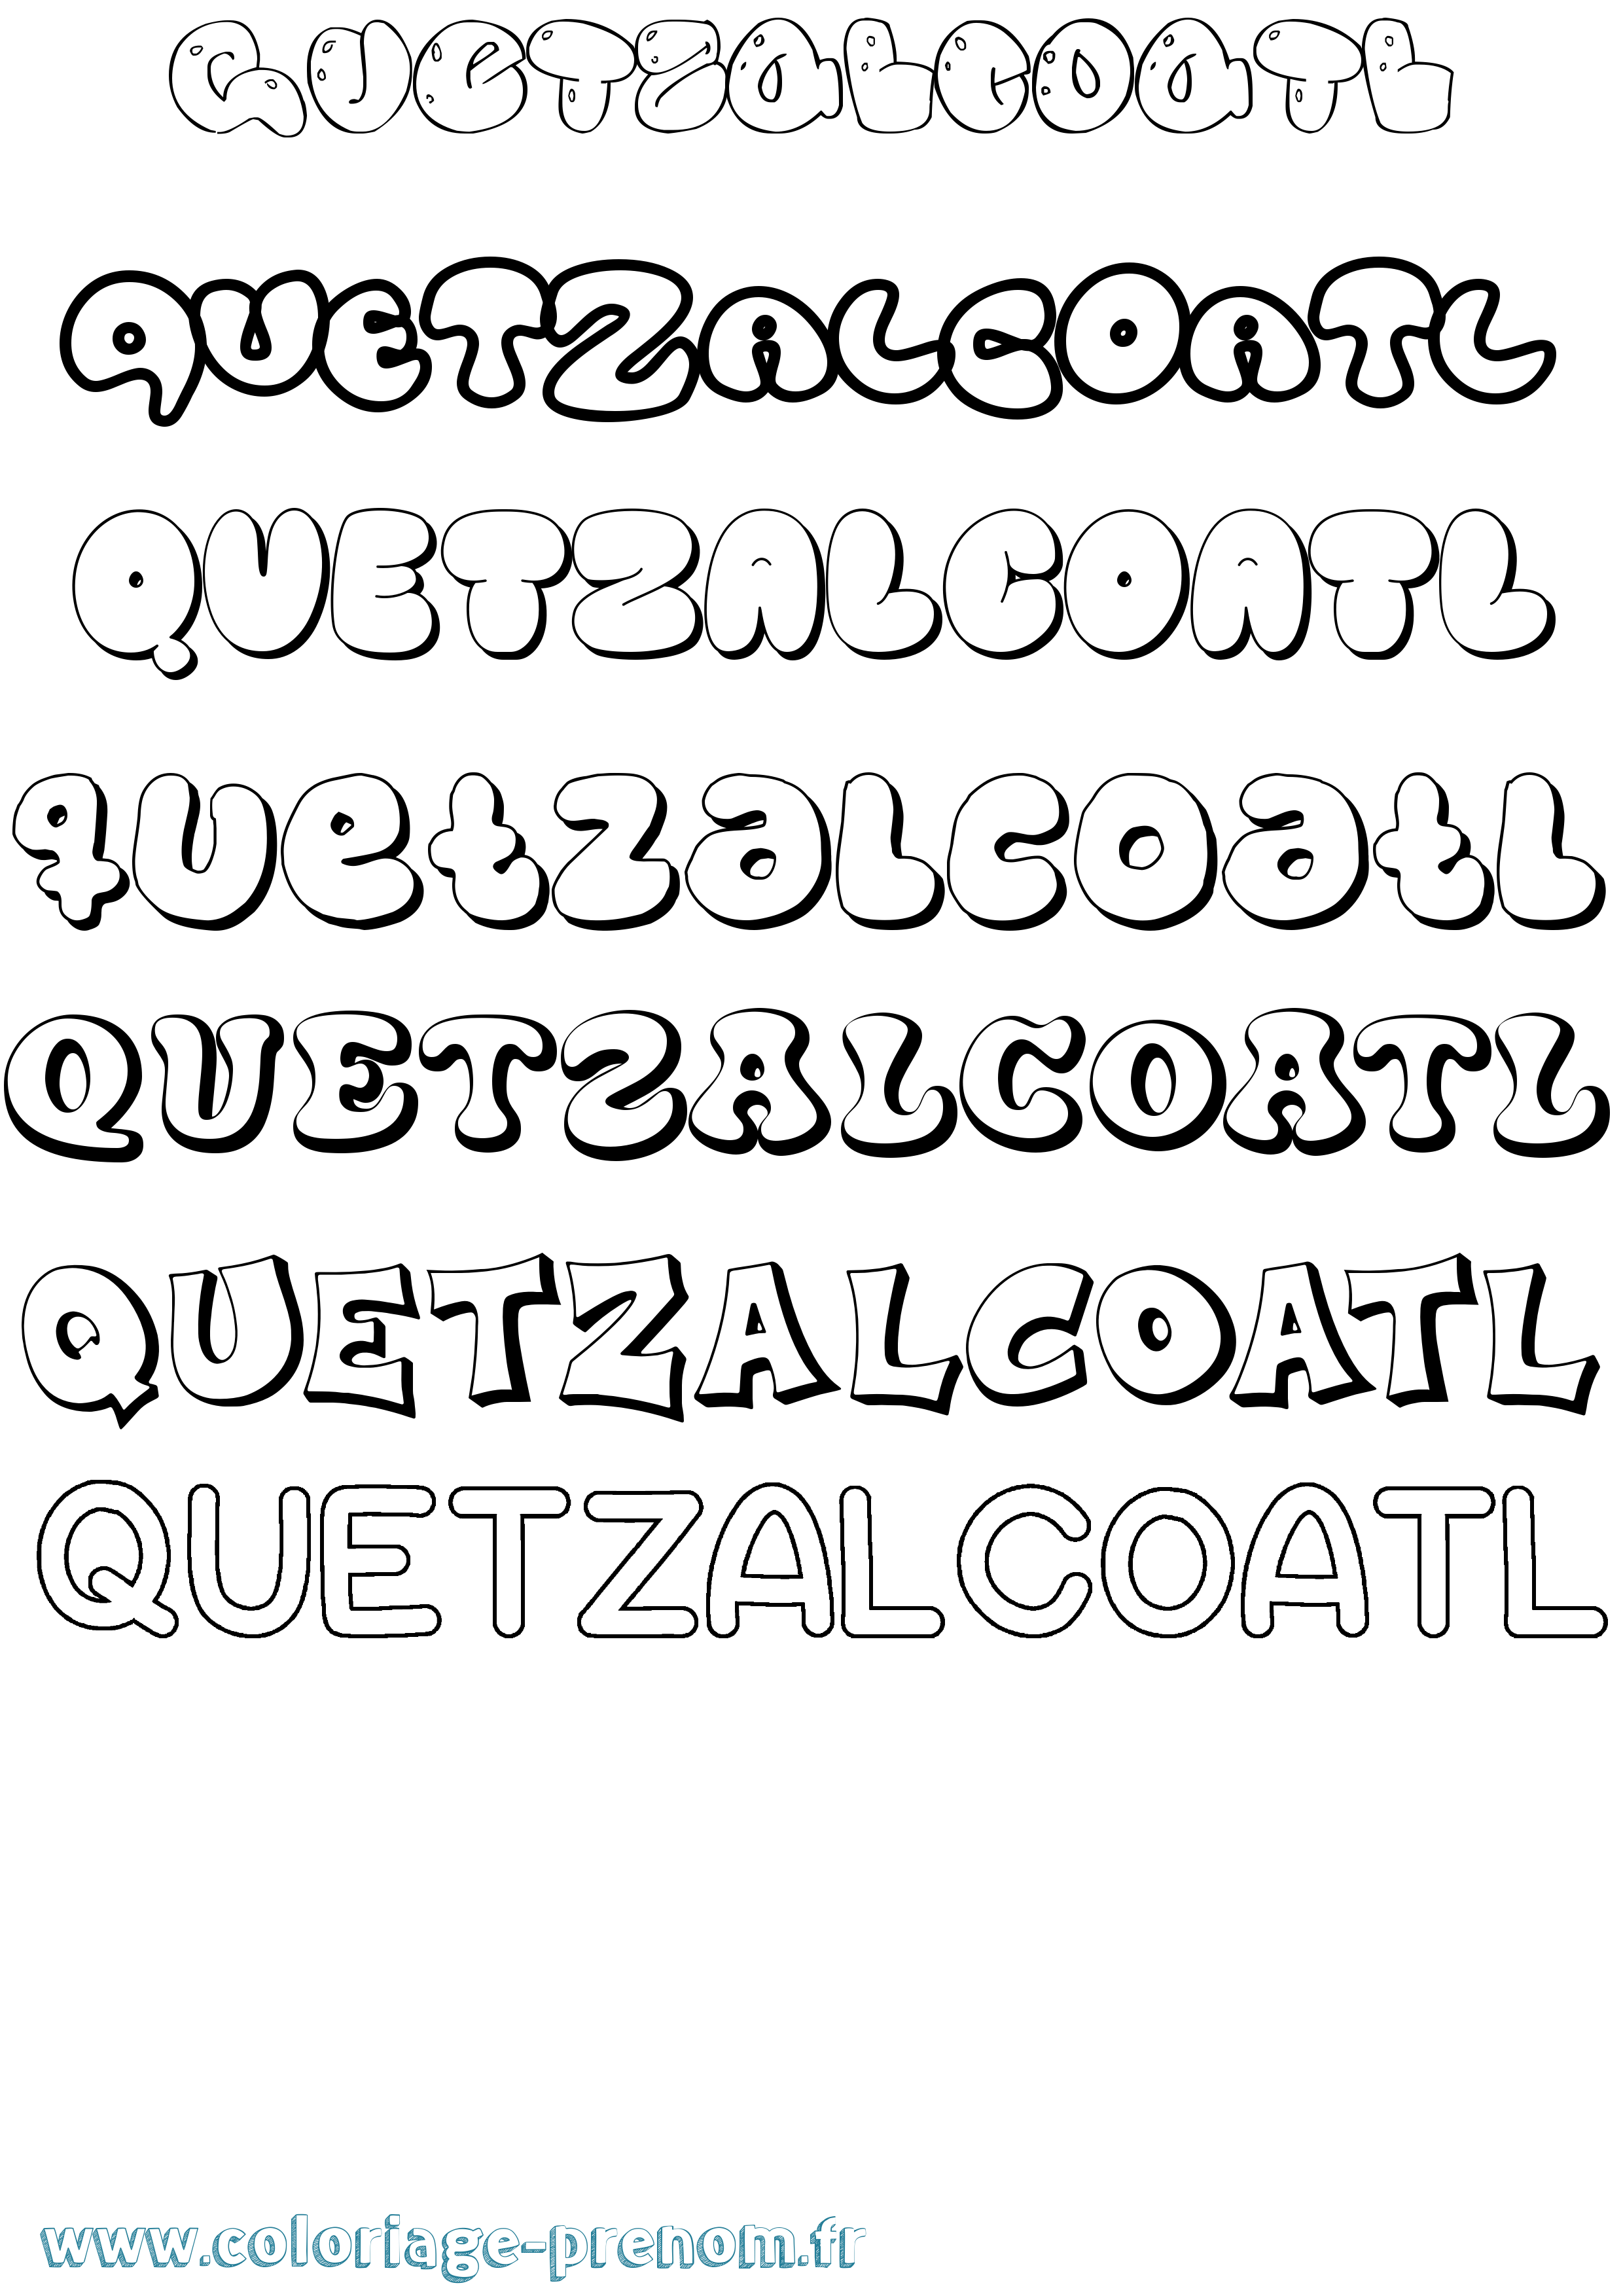 Coloriage prénom Quetzalcoatl Bubble